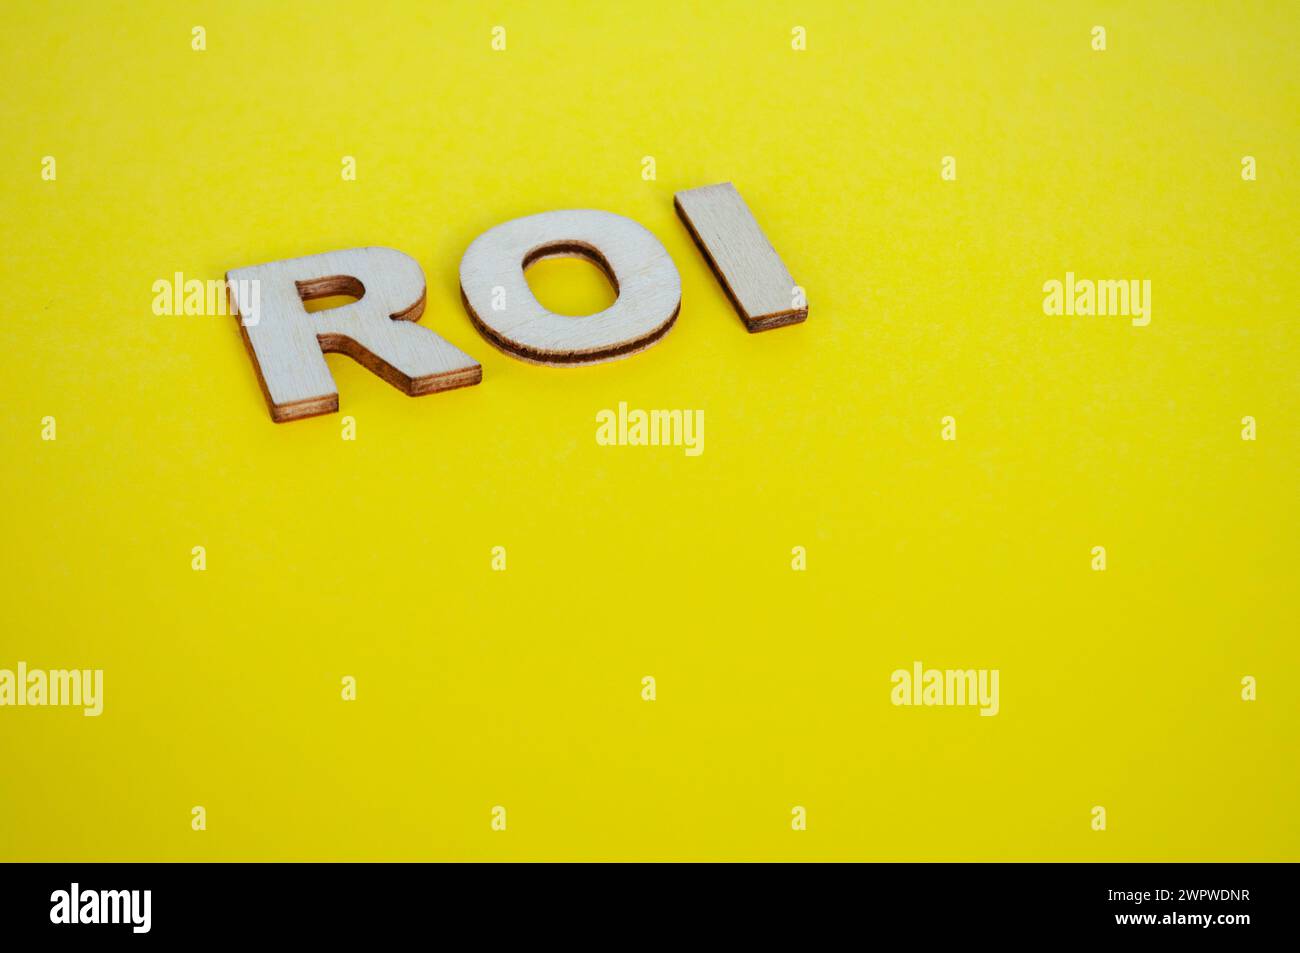 Letras de madera ROI que representan el retorno de la inversión sobre fondo amarillo. Foto de stock